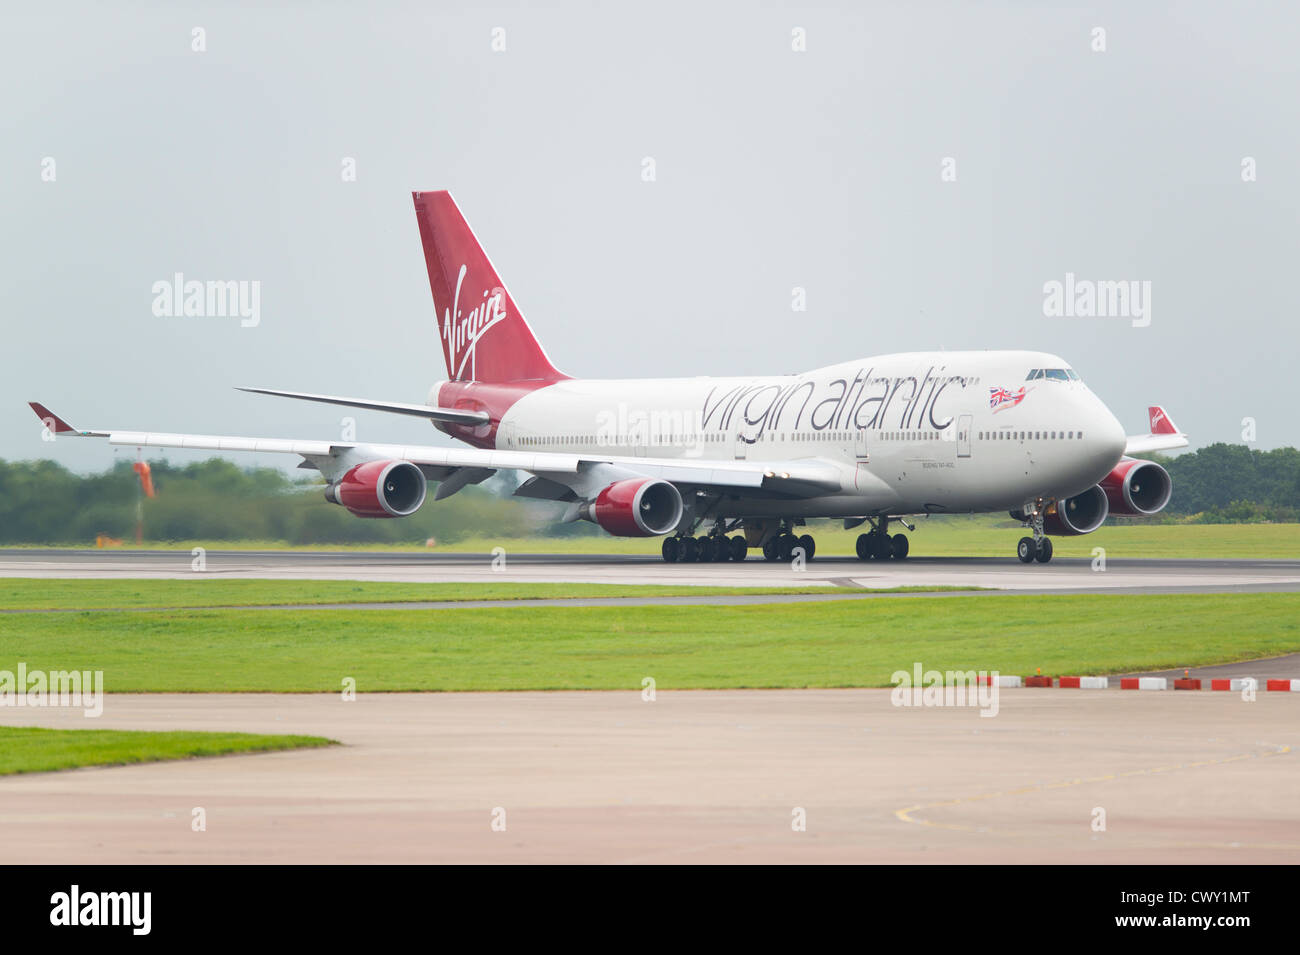 Virgin Atlantic un Boeing 747 Jumbo Jet a punto de despegar del aeropuerto internacional de Manchester (uso Editorial solamente) Foto de stock